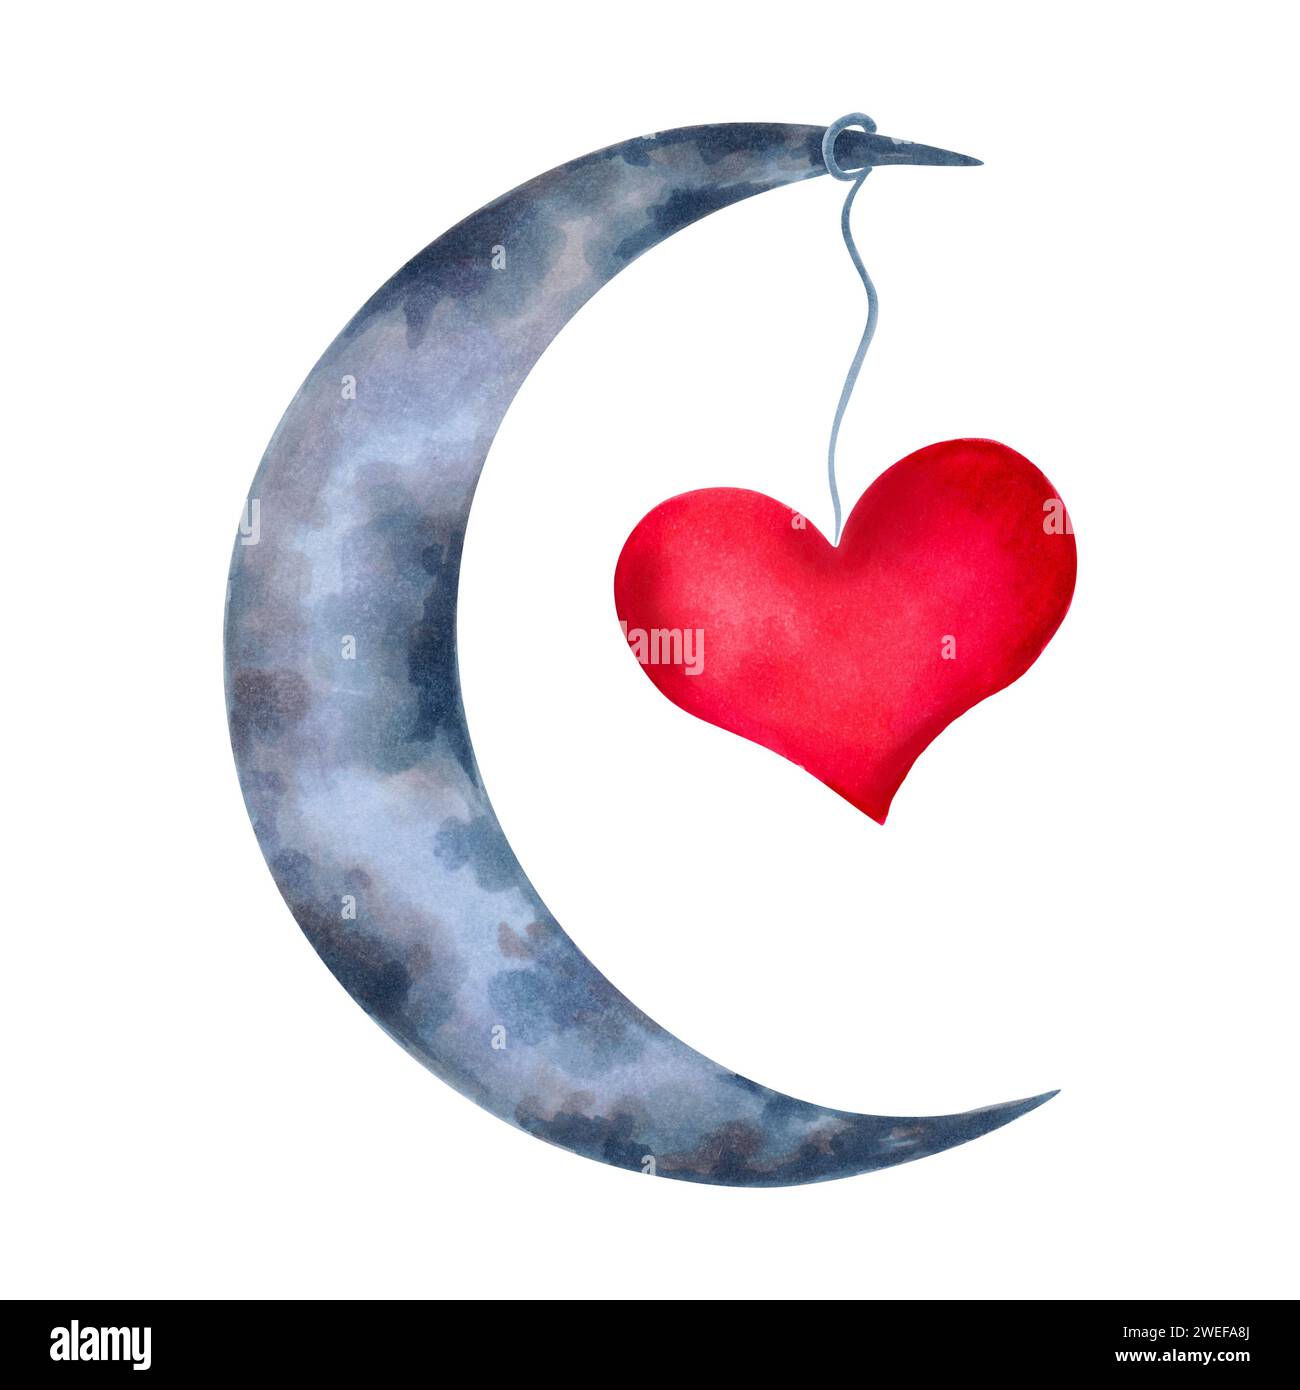 Clipart di una luna a mezzaluna con un cuore. Disegno astrologico per San Valentino. Illustrazione con acquerelli e marcatori. Composizione per adesivi Foto Stock